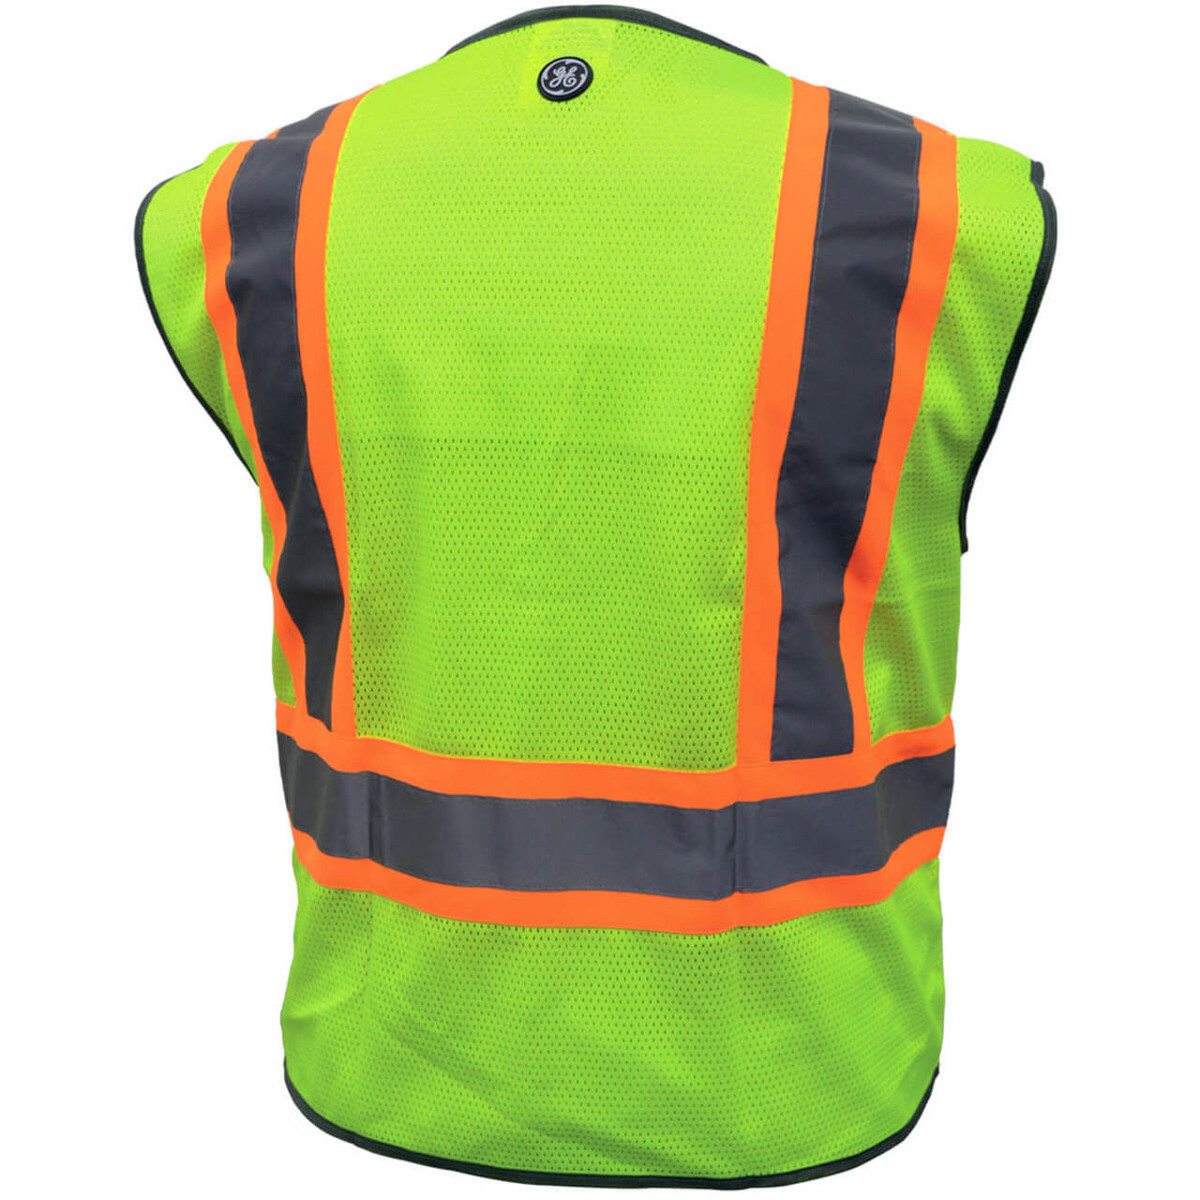 Reflective Multi Purpose Safety Vest